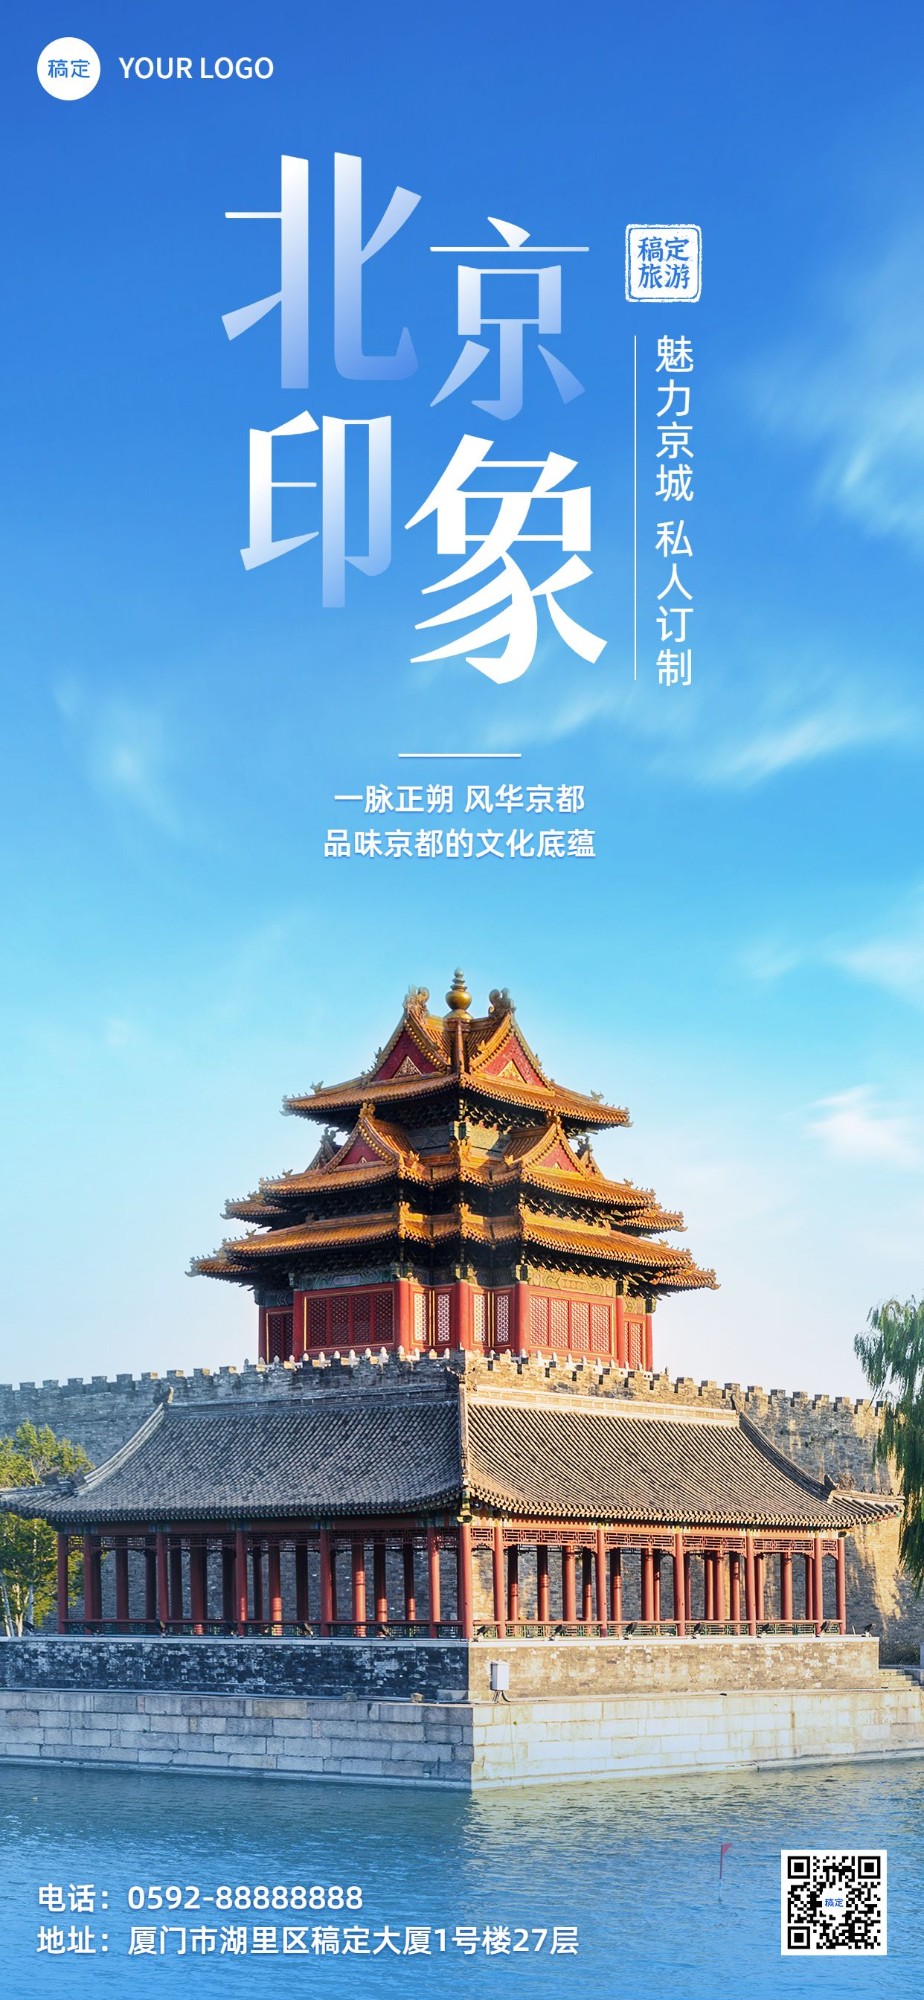 旅游出行北京城市线路推广实景风全屏竖版海报